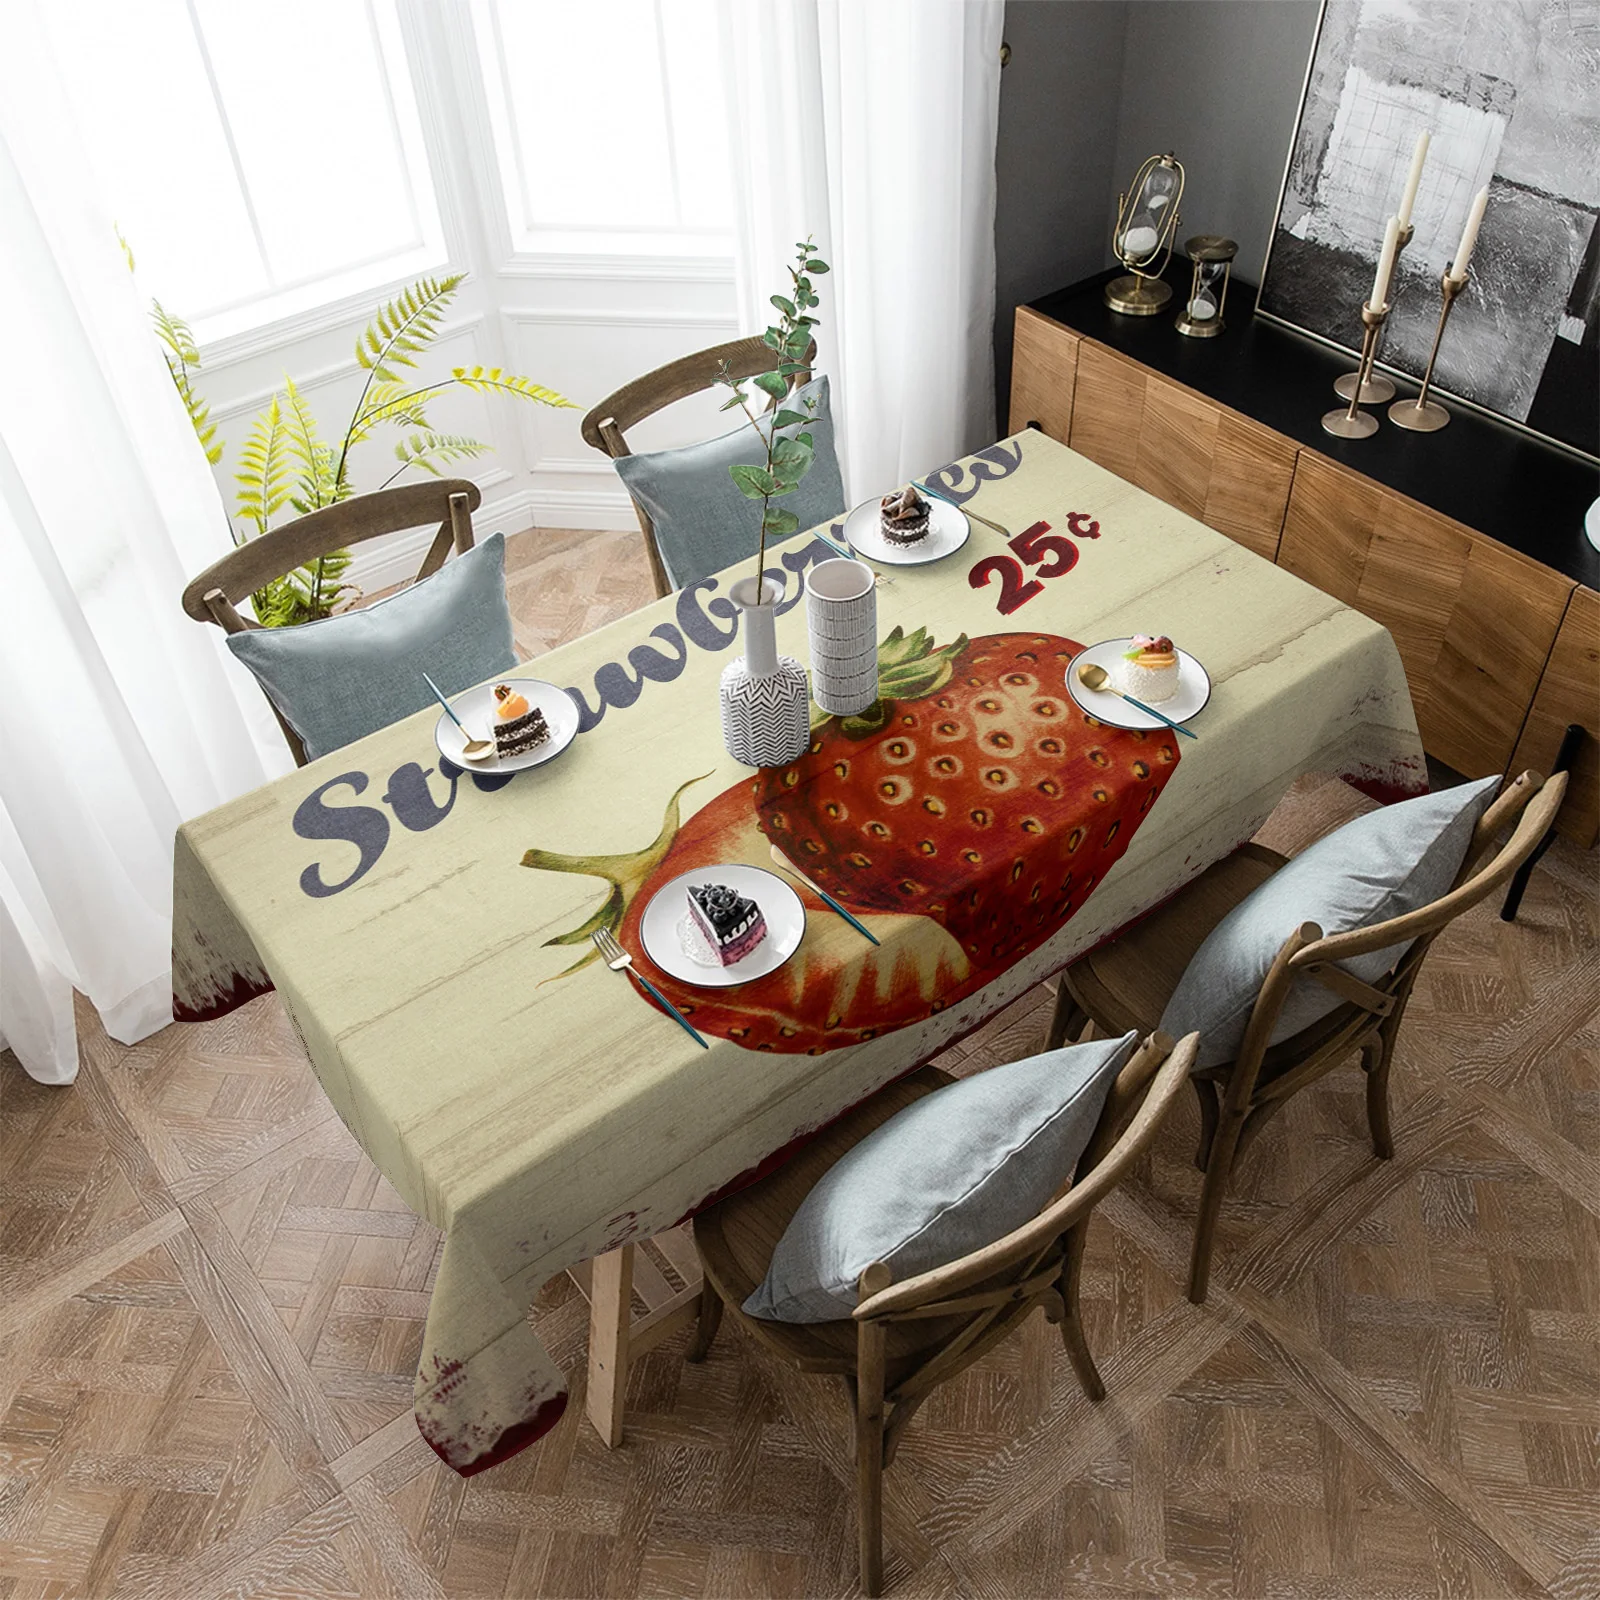 

Водонепроницаемая скатерть в стиле ретро с изображением фруктов, клубники, дерева, декоративные принадлежности, прямоугольная скатерть для кухонного стола, декор для стола